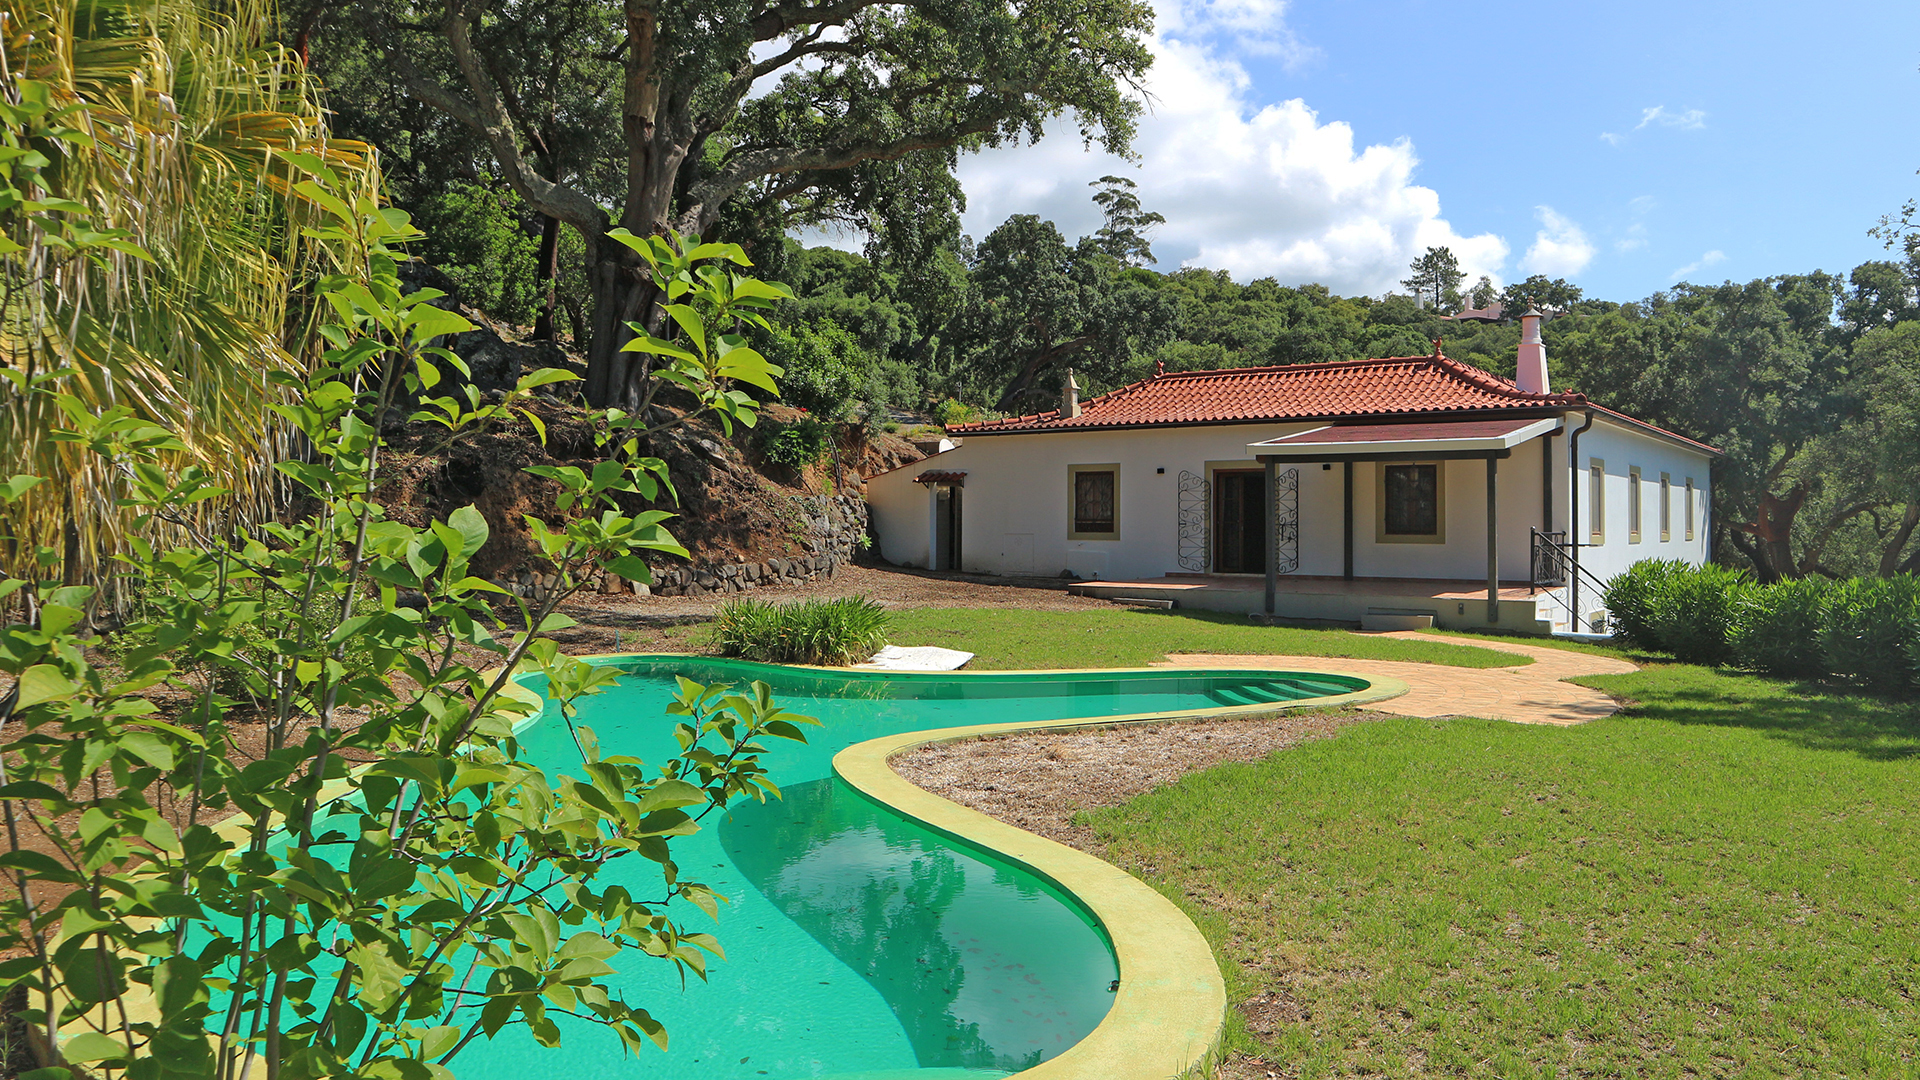 Togofor Homes Immobilienagentur - Wir arbeiten mit internationalen und nationalen Kunden seit 2005